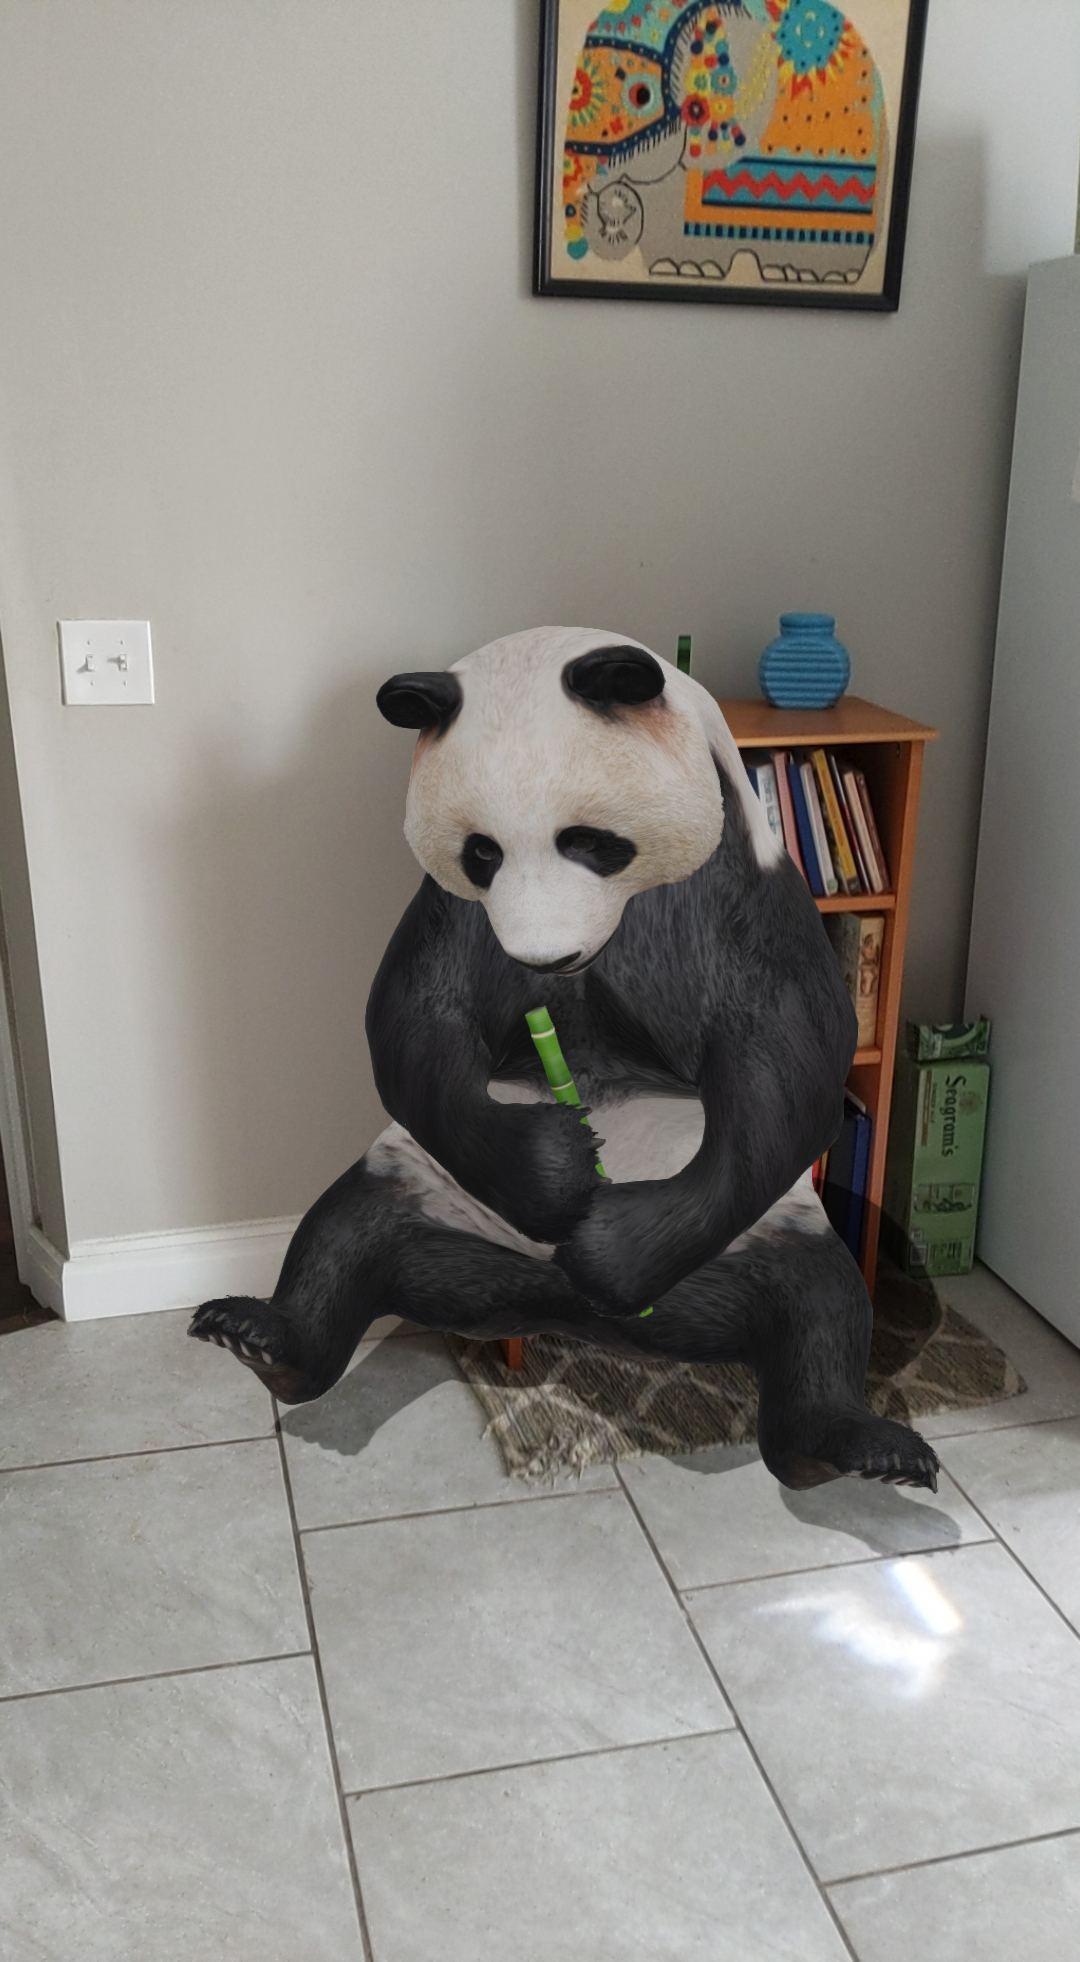 An AR panda in a house.